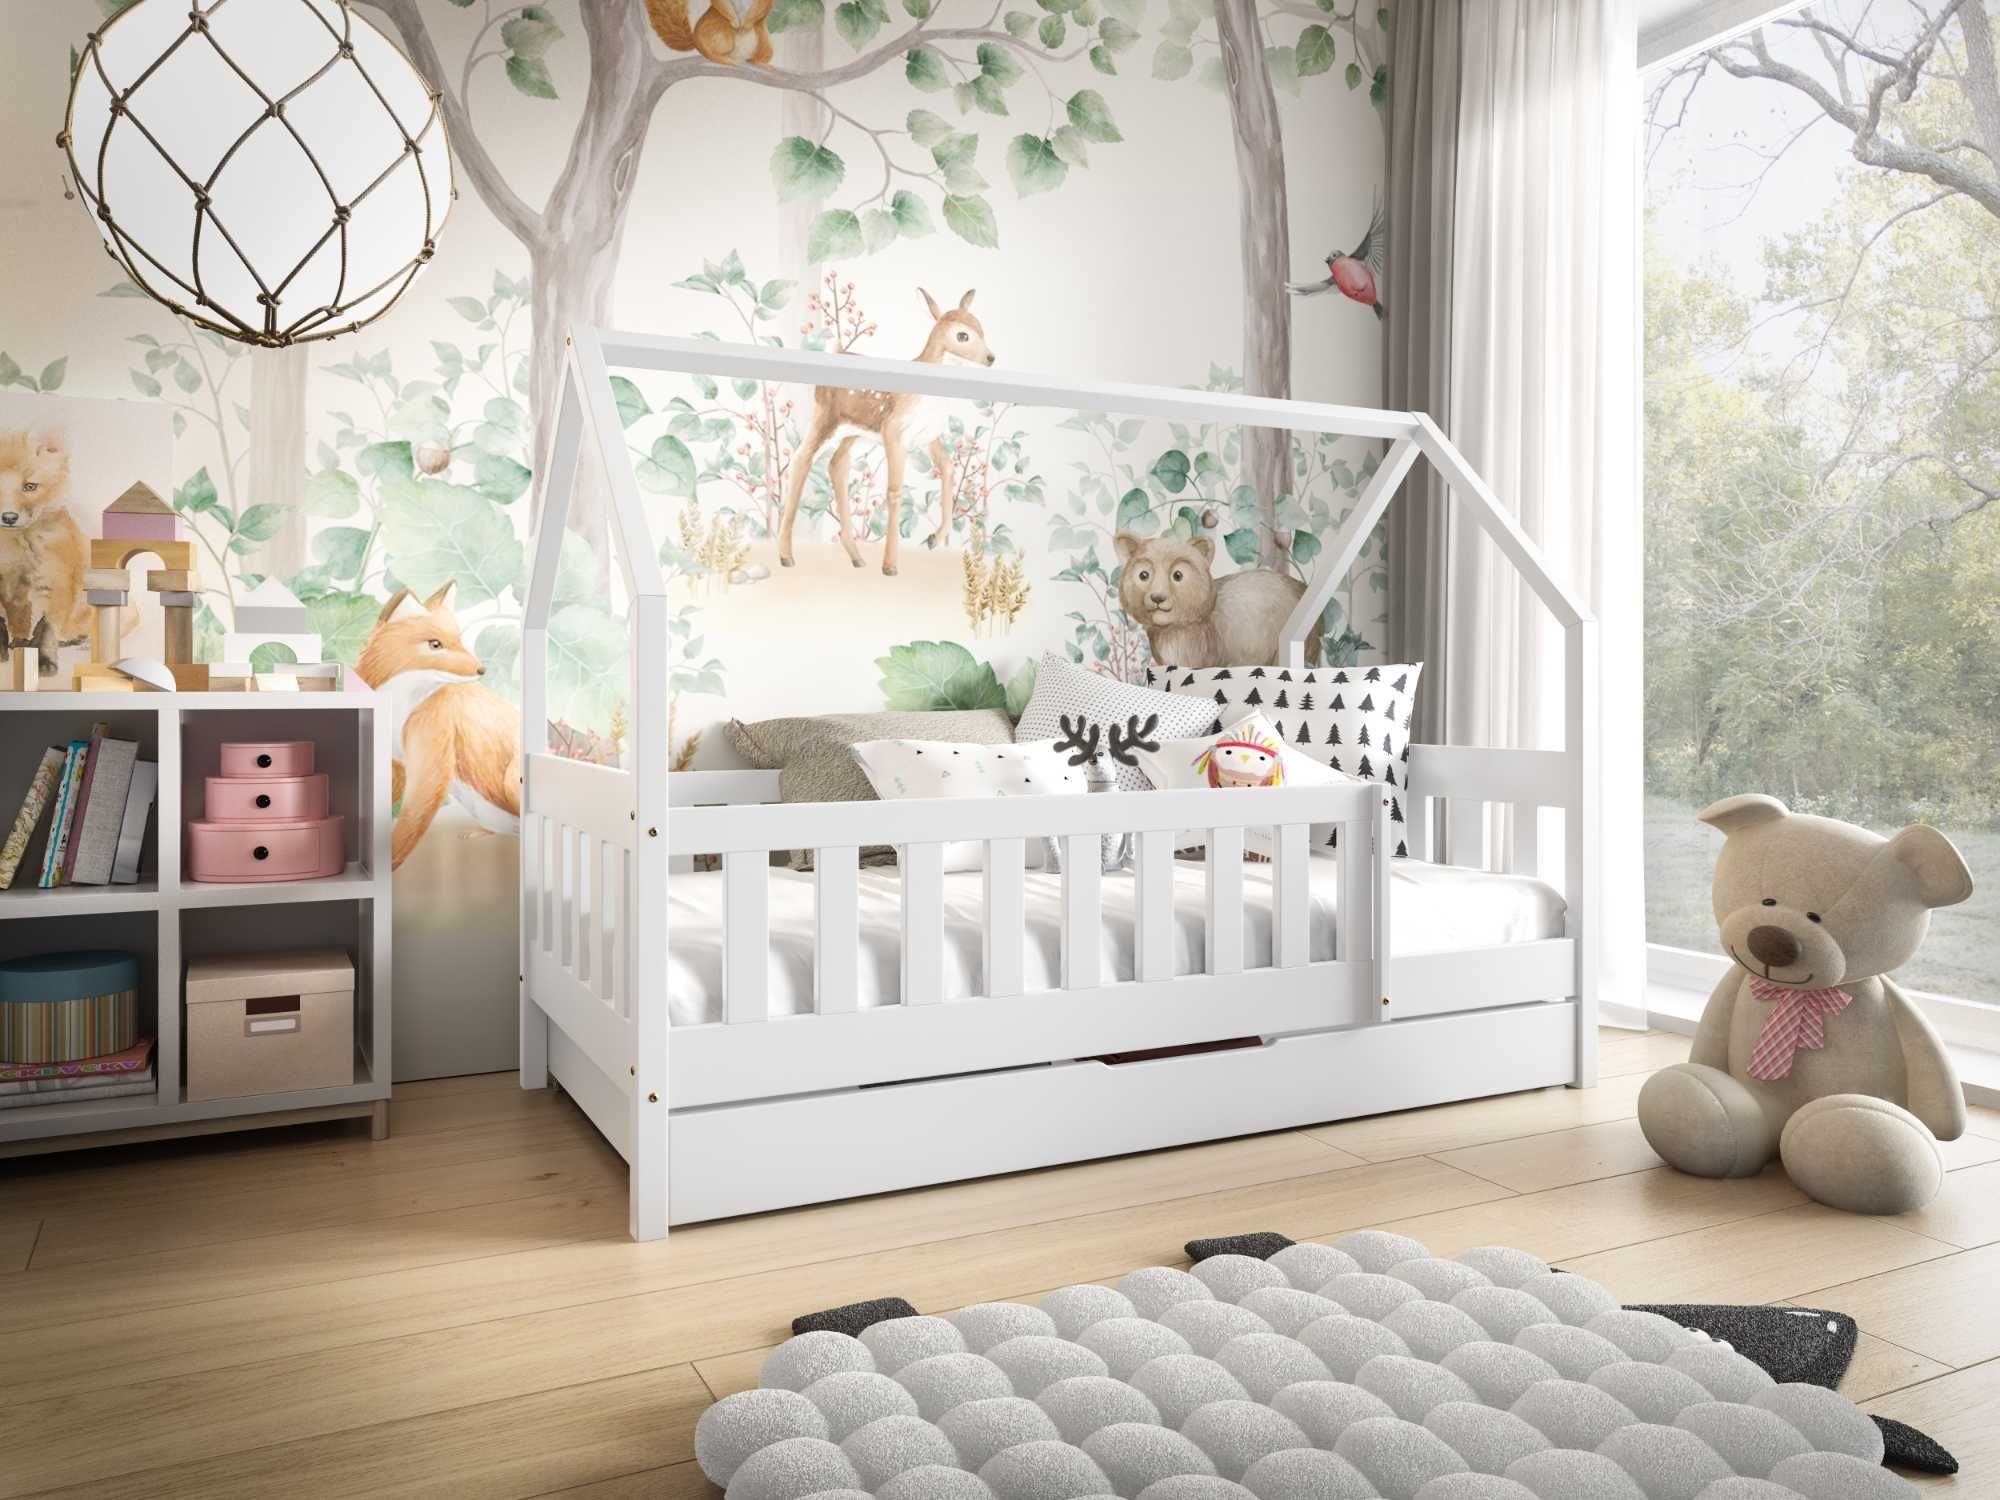 Łóżko dla dziecka LUNA z drewna - materac w cenie